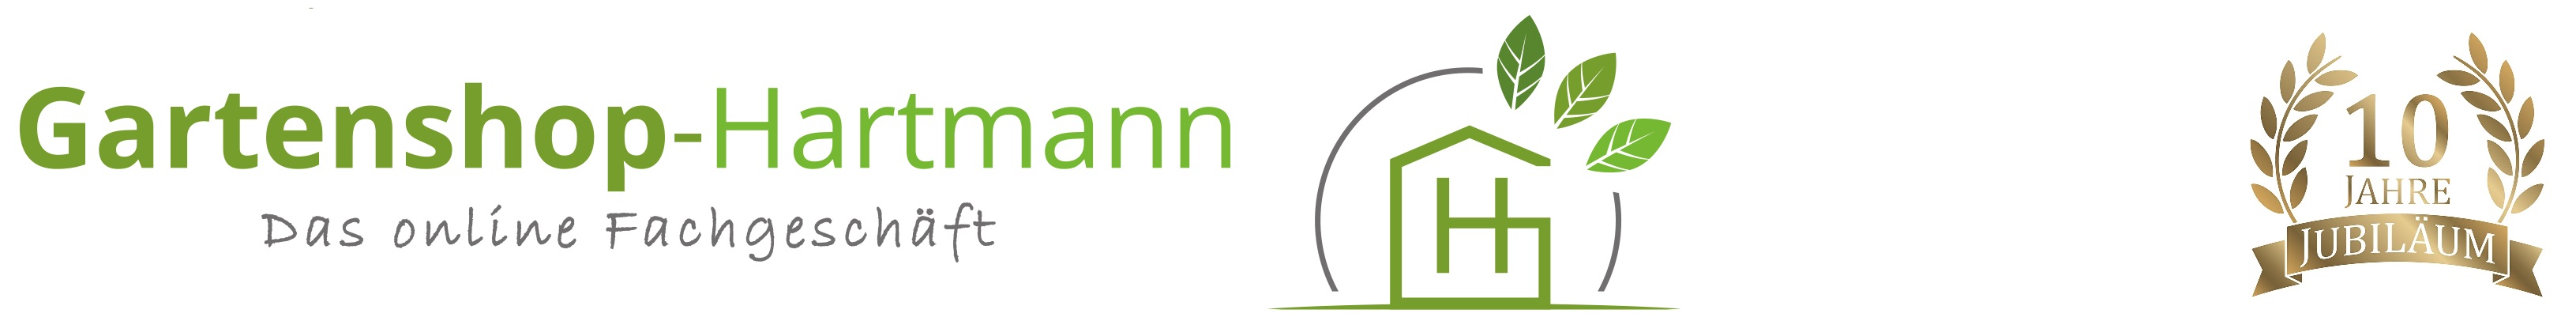 Gartenshop-Hartmann-Logo